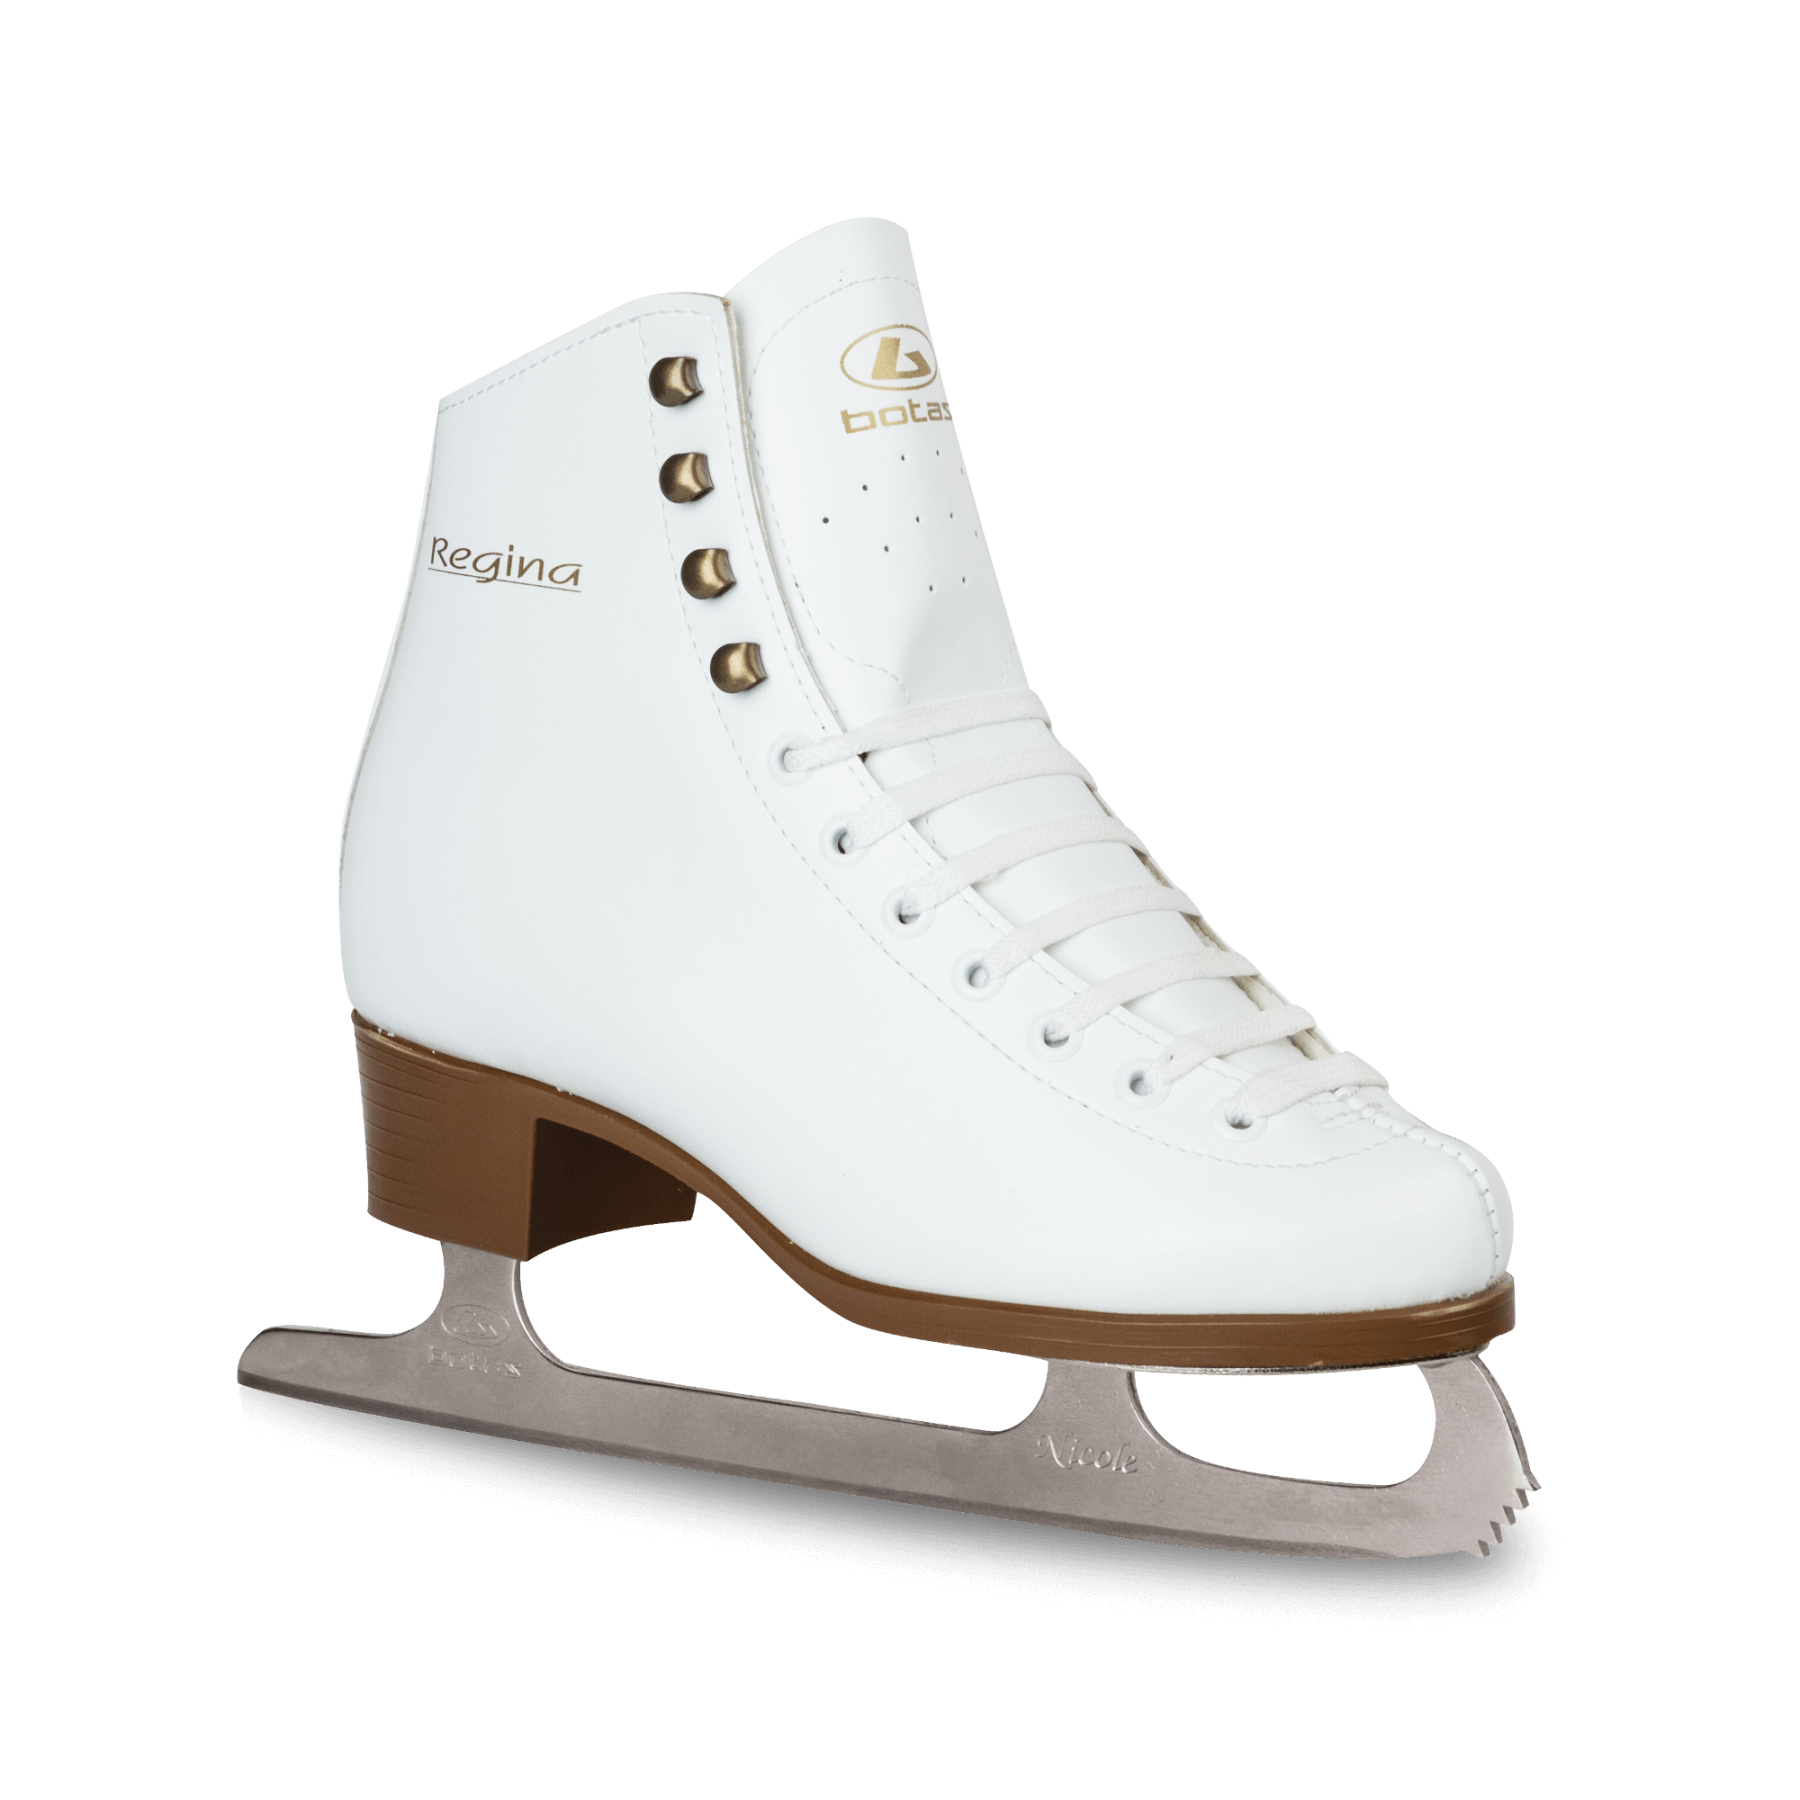 하얀 아이스 스케이팅 신발 PNG 이미지